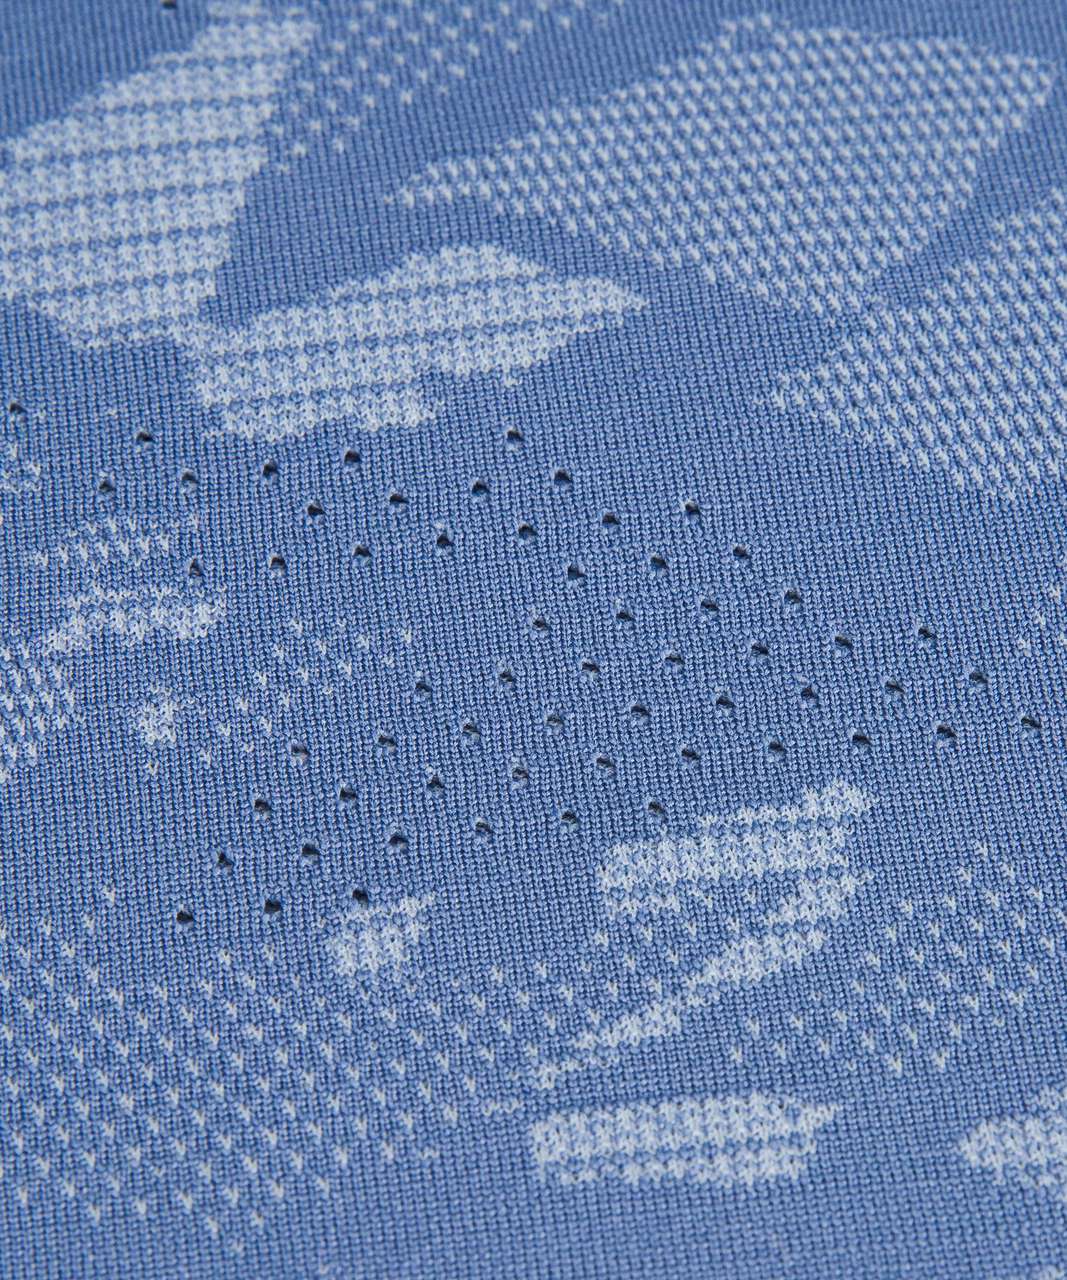 Lululemon Train to Be Short Sleeve Shirt - Mosaic Multiply Water Drop / Blue Linen